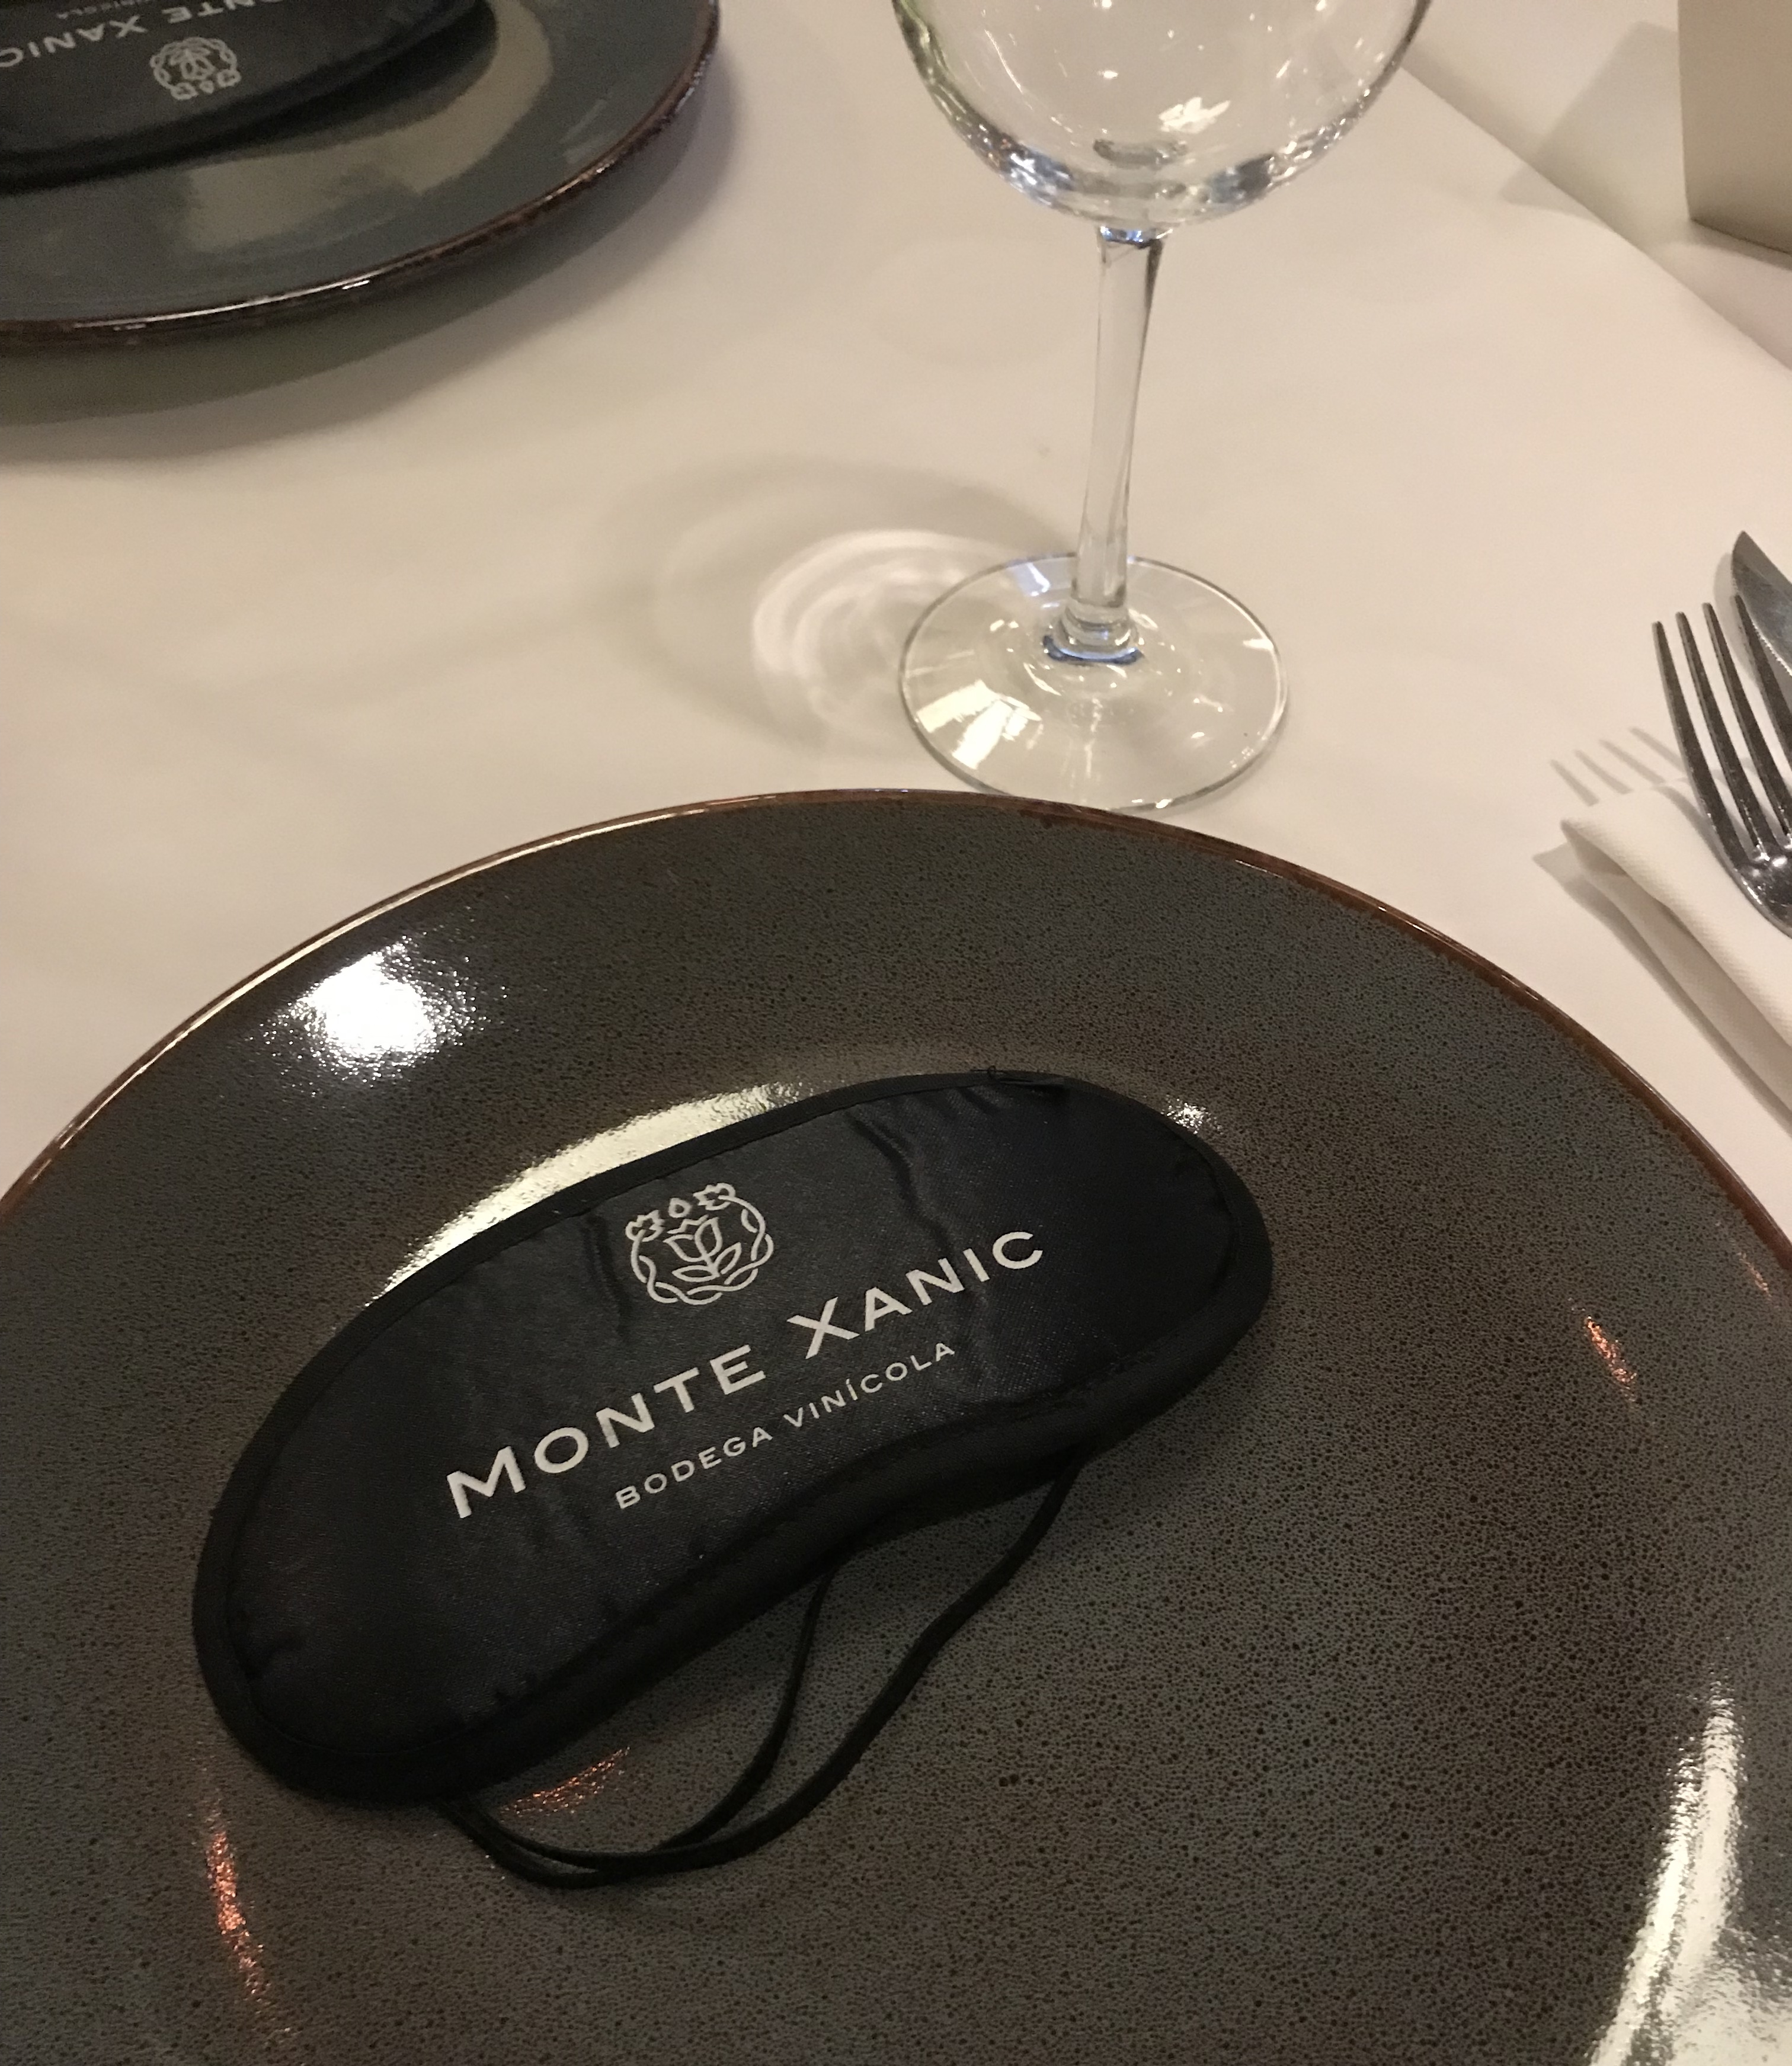 Cena a ciegas con Monte Xanic